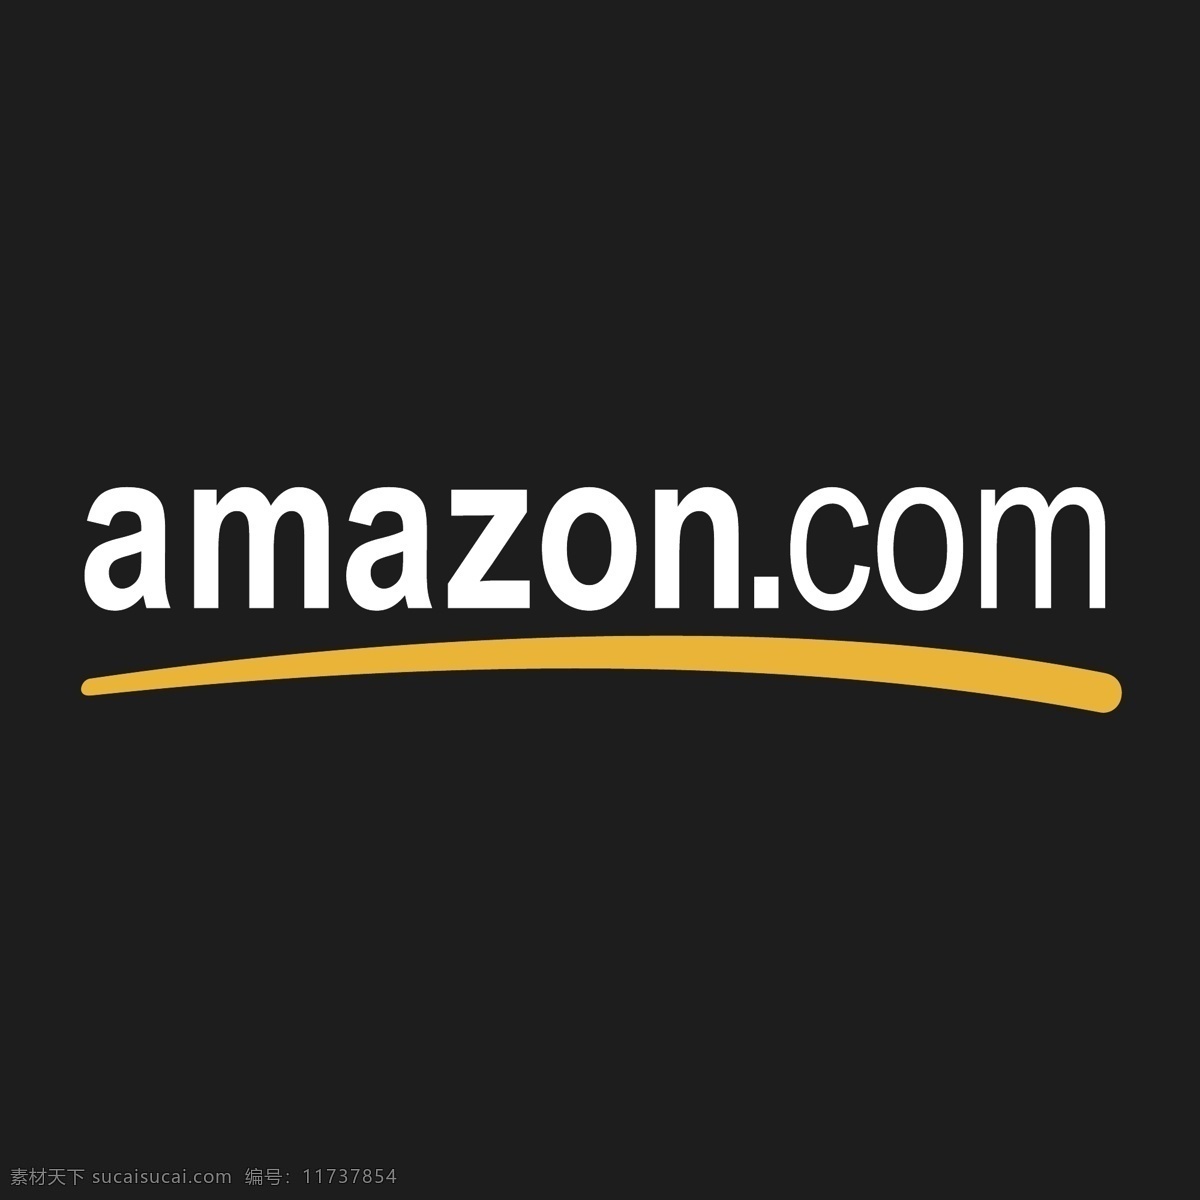 亚马逊 com amazon 标识 标识为免费 psd源文件 logo设计